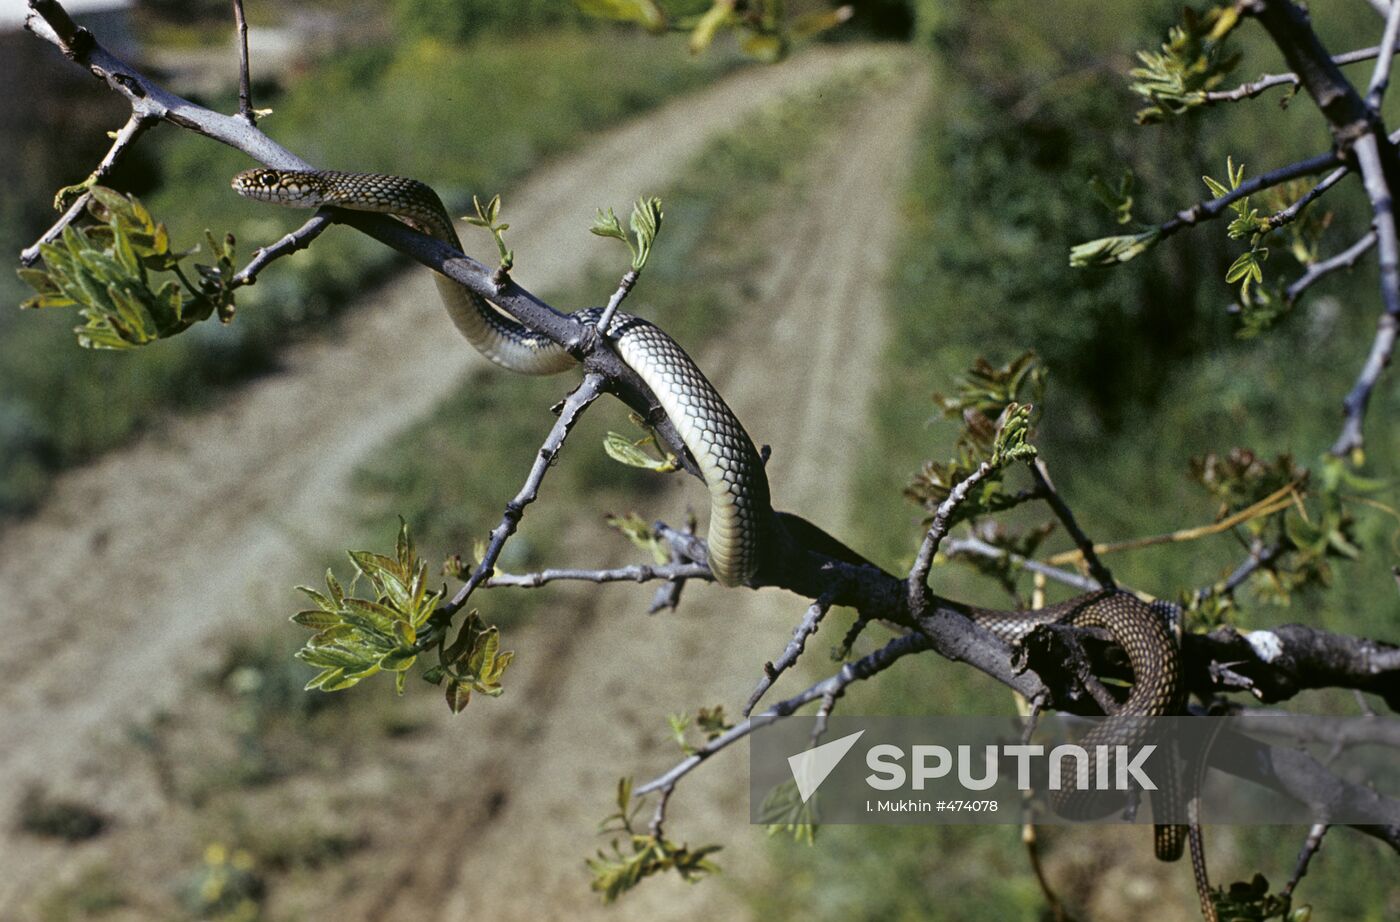 Large whip snake